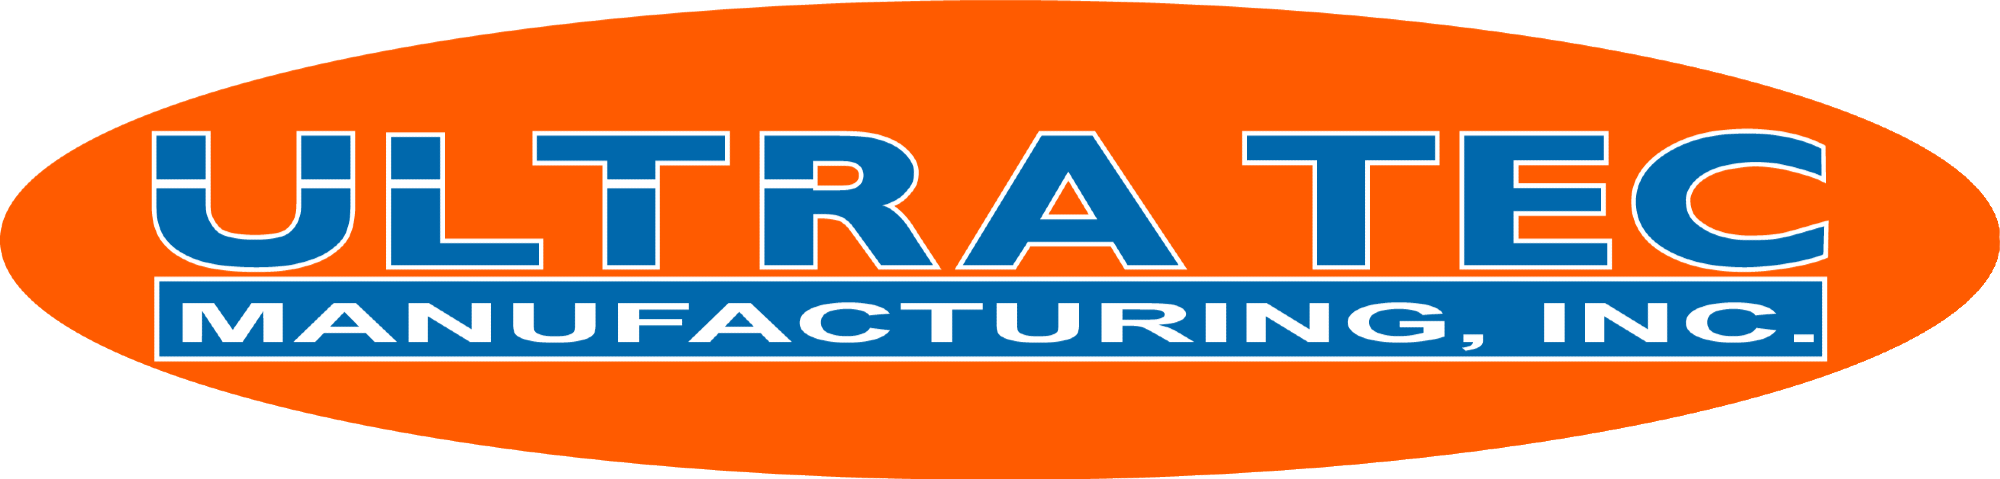 ULTRA TEC Manufacturing Inc